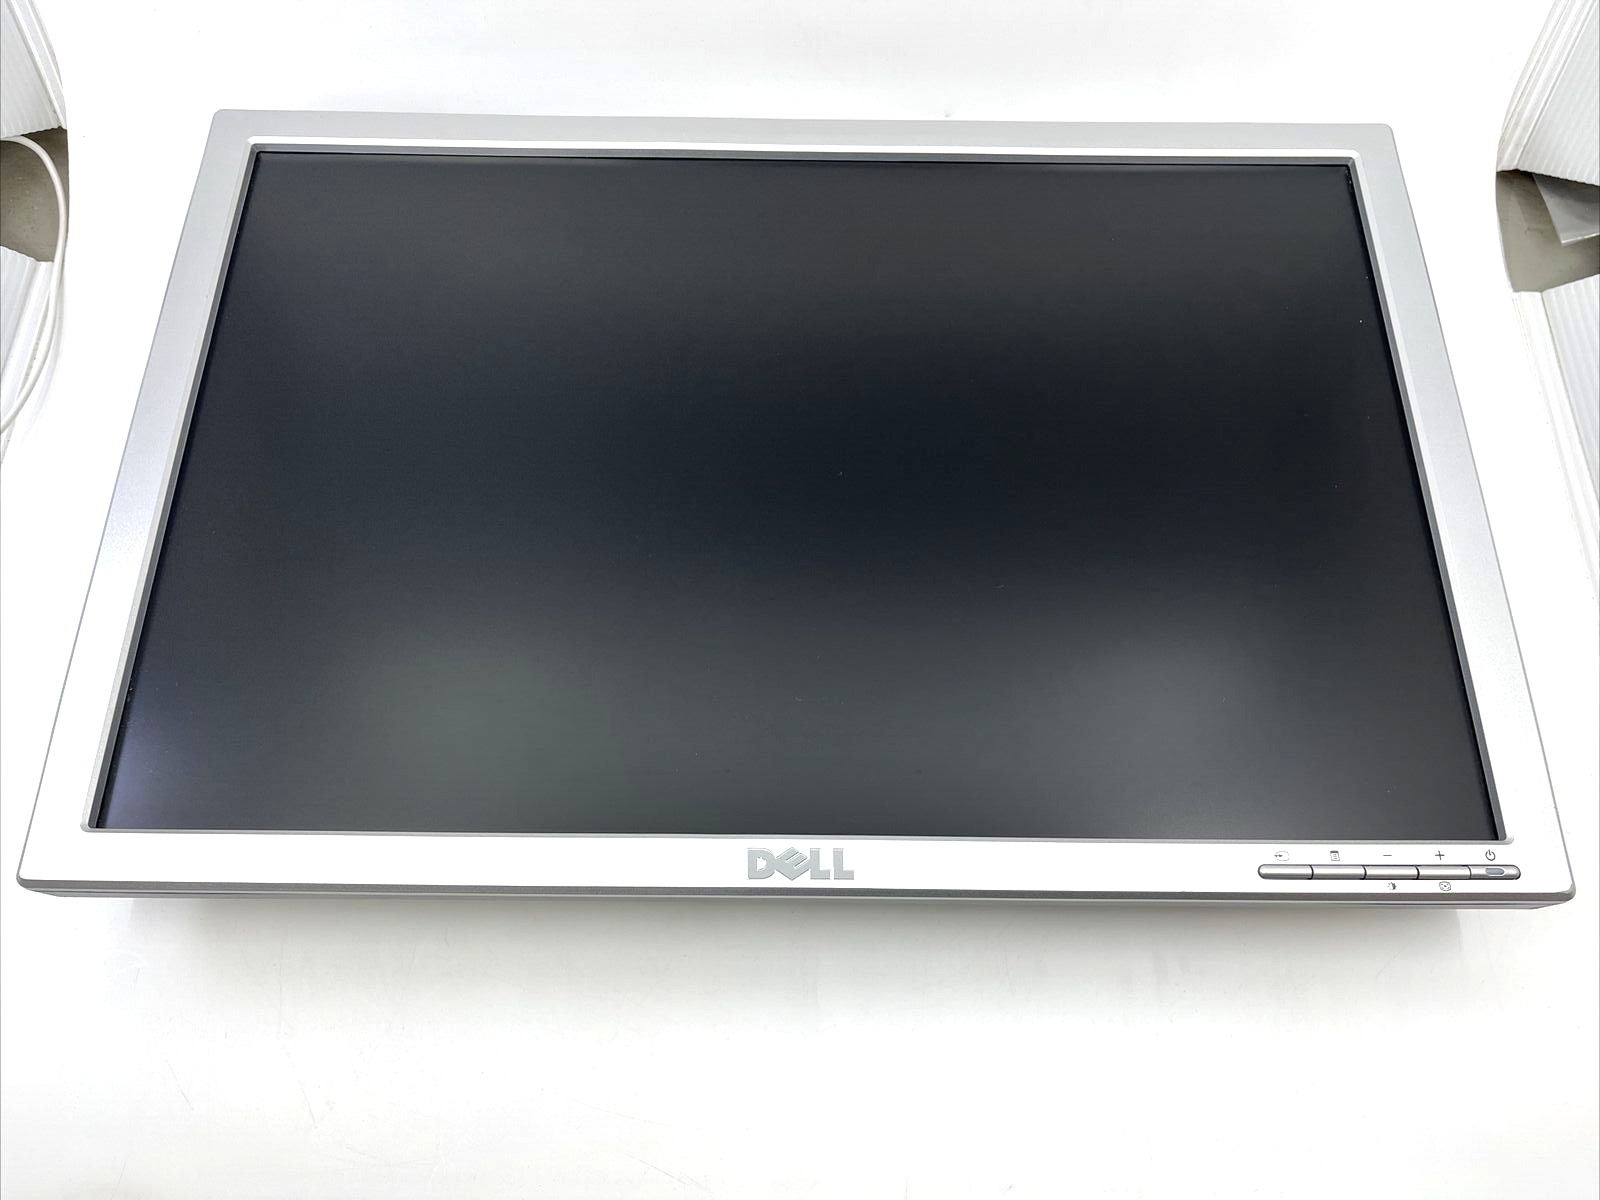 Dell SE198WFPV LCD Monitor - 19